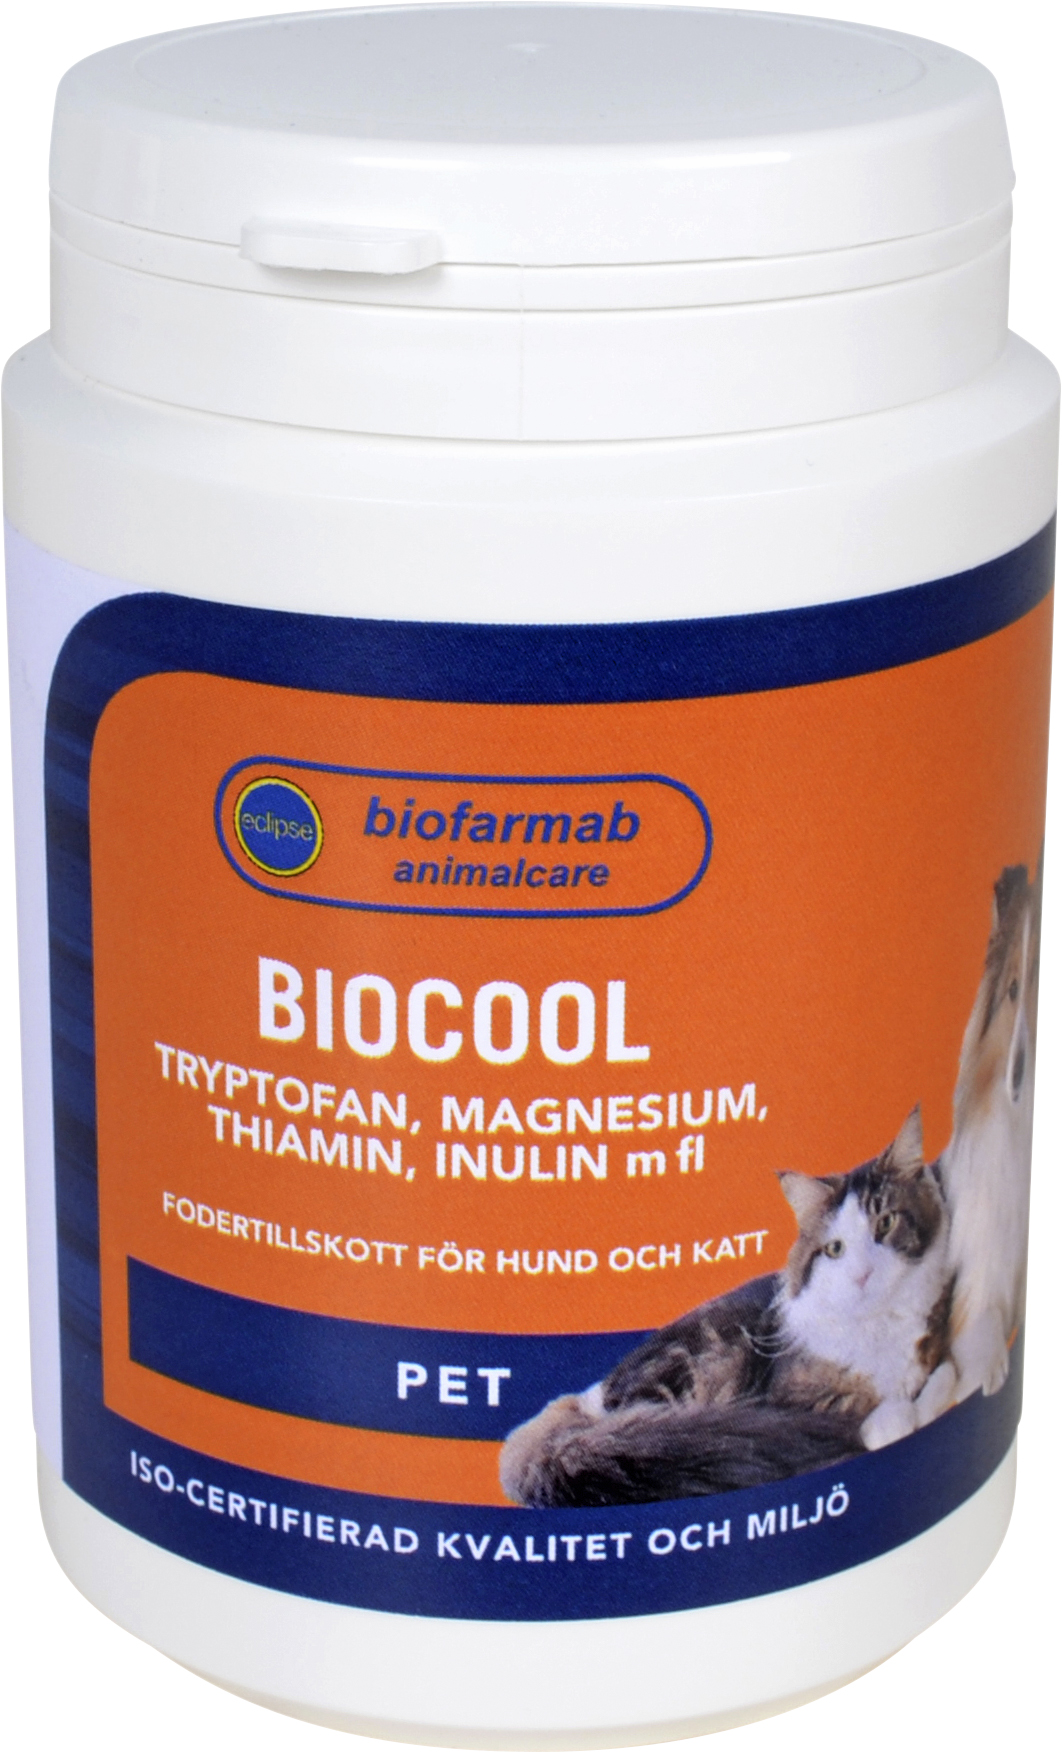 Kosttillskott Eclipse Biofarmab BioCool 150g